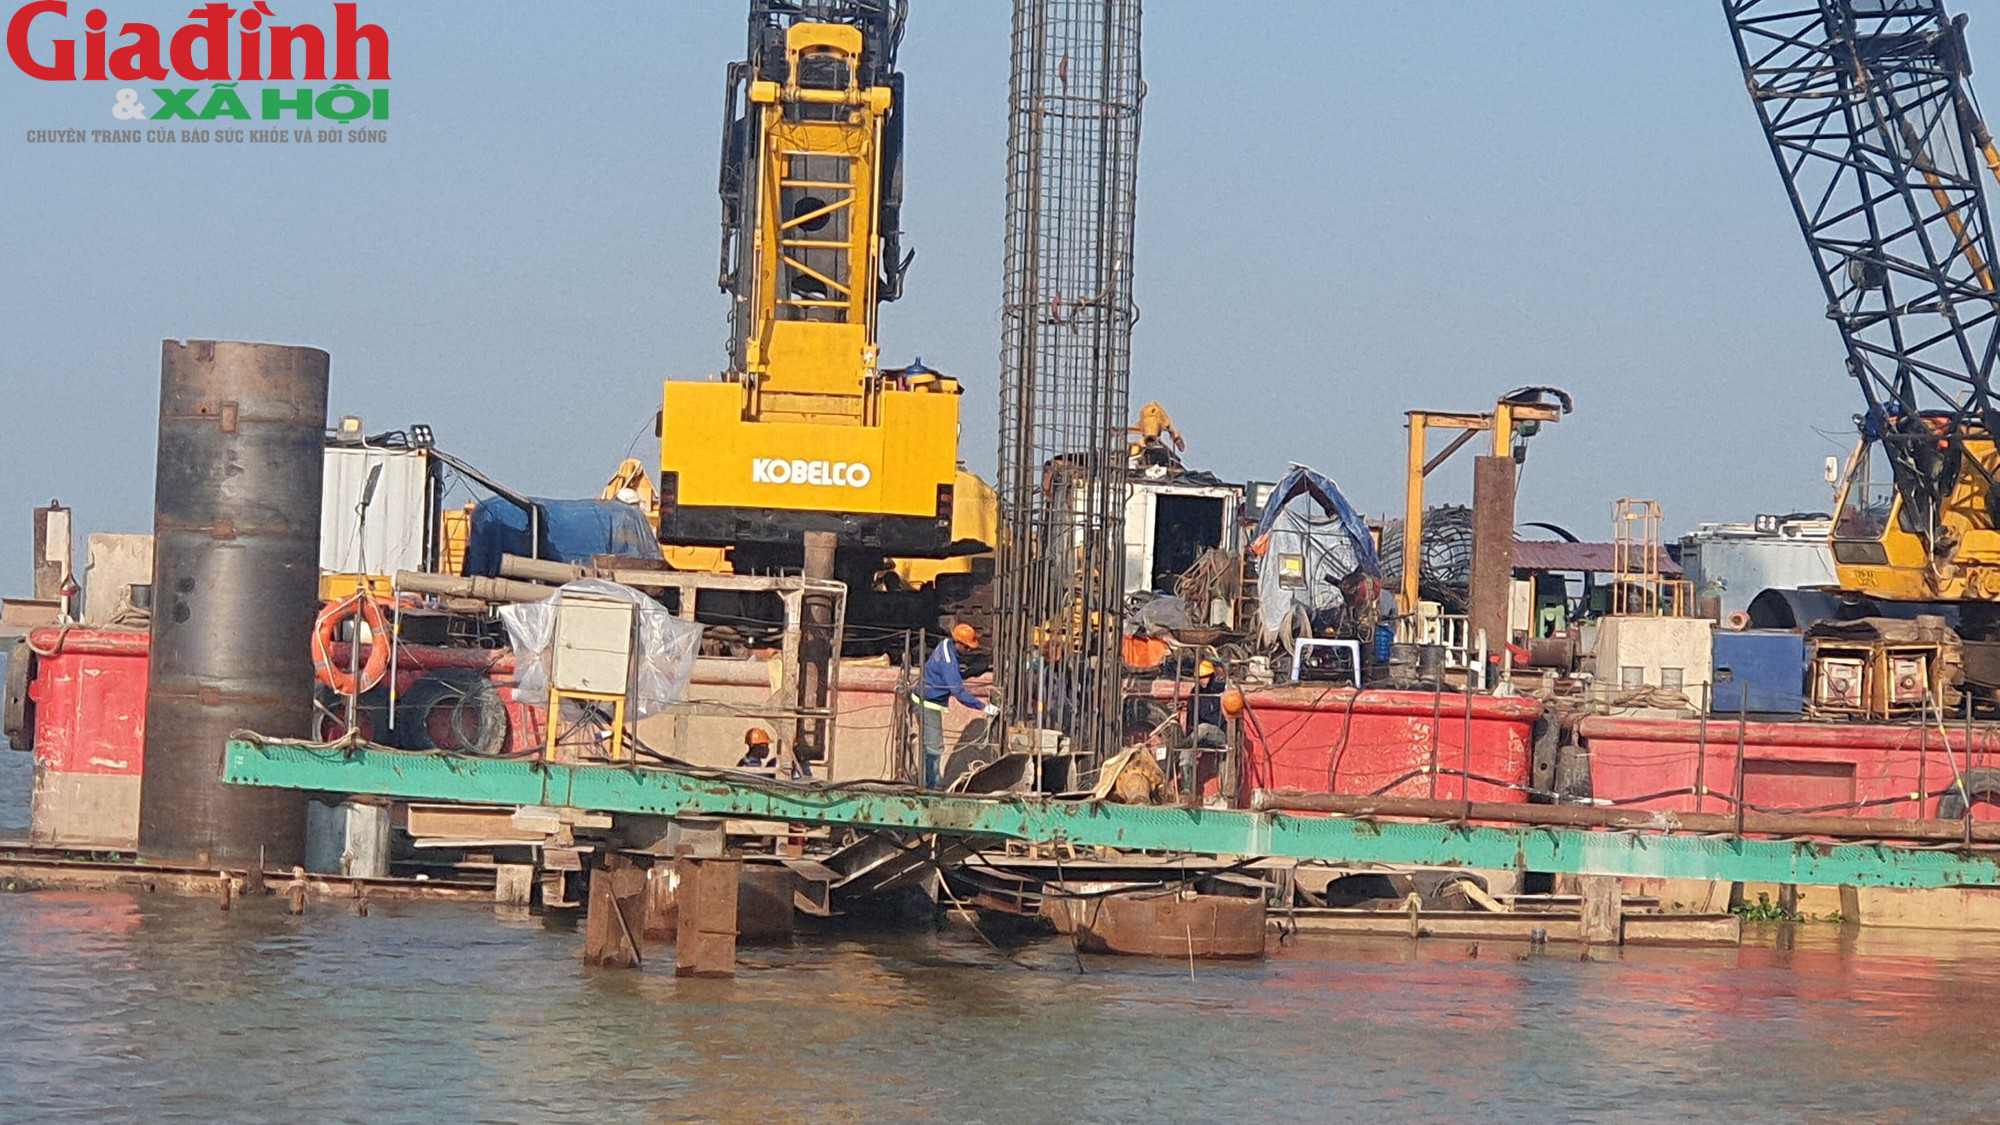 Cận cảnh đại công trình xây dựng cầu Đồng Cao (Nam Định) giữa sông lớn - Ảnh 4.